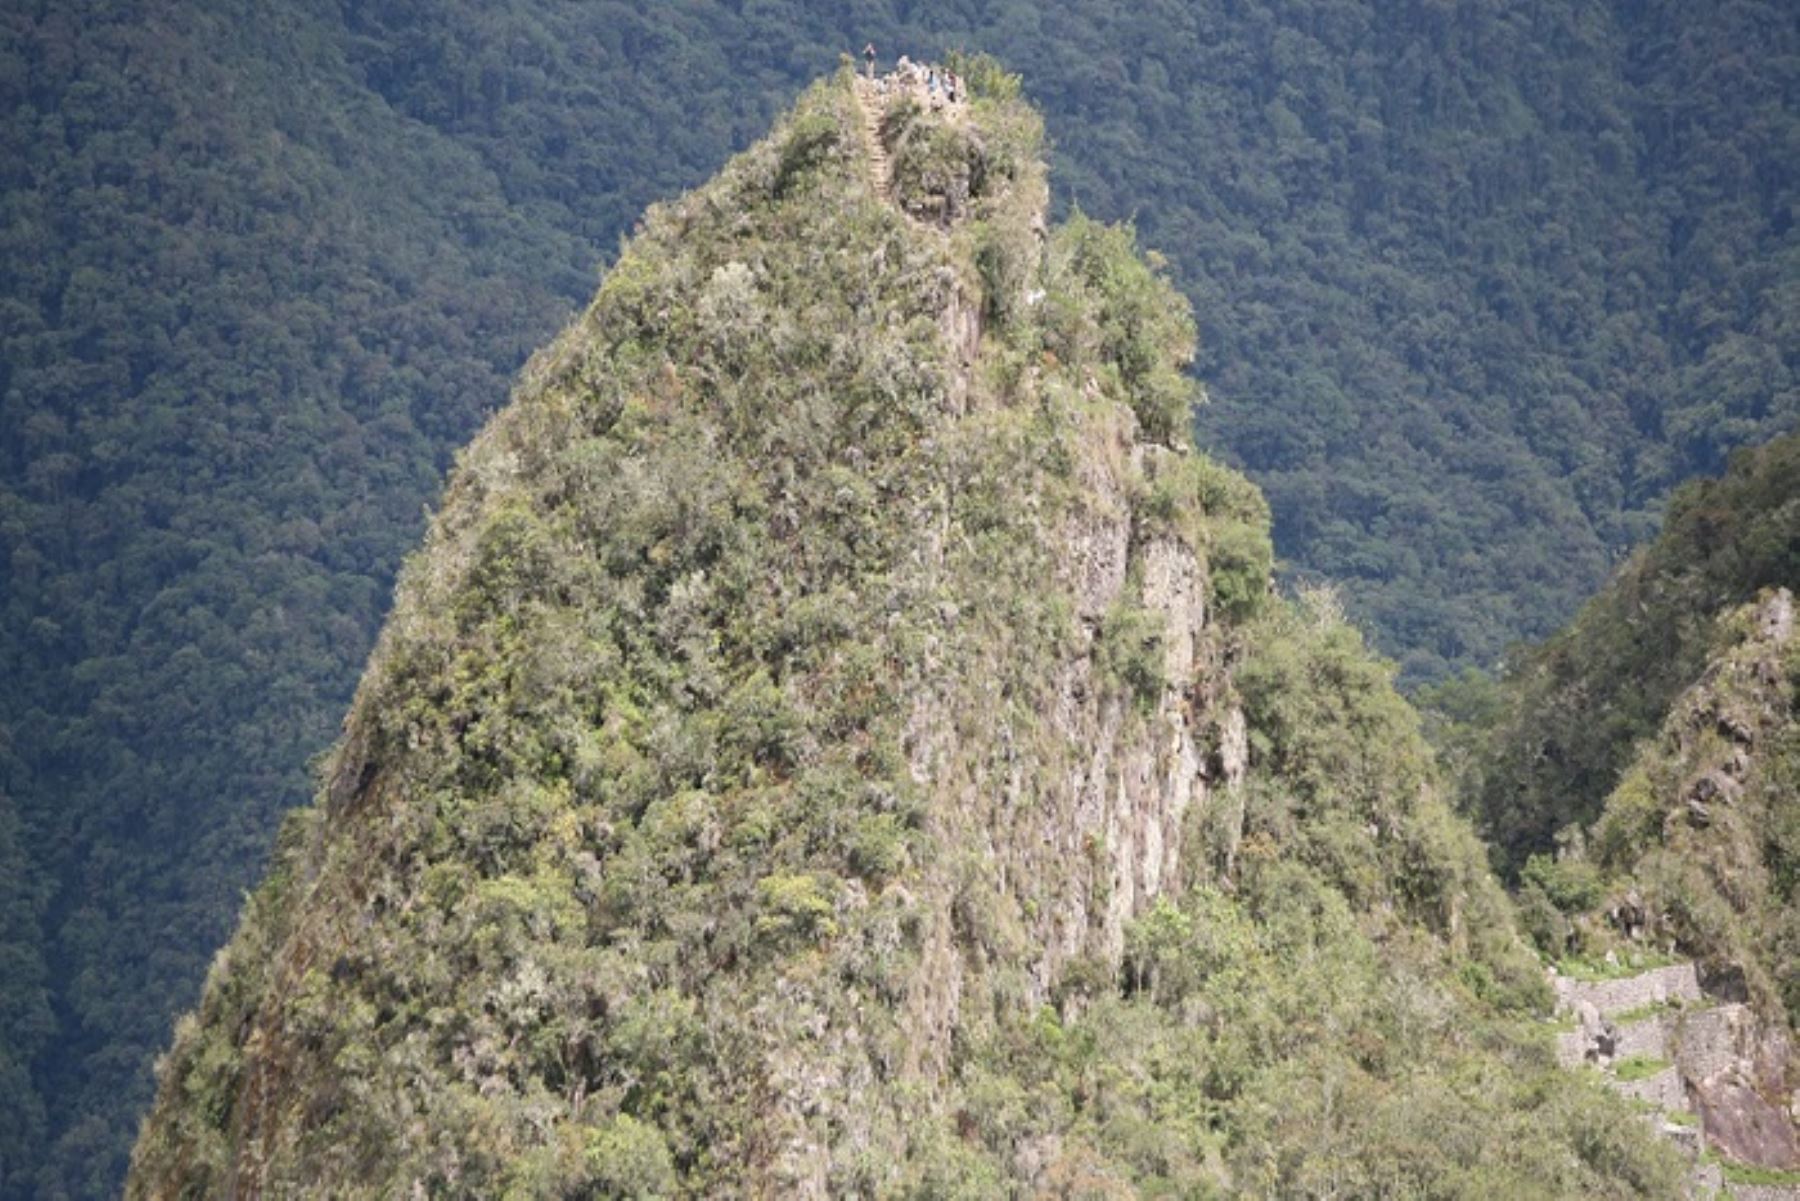 “Los visitantes disfrutan de la caminata, de las estructuras inca, la vista espectacular de la llaqta desde otro ángulo que no sea el clásico”, destaca Guadalupe Quiroga, jefa del parque arqueológico de Machu Picchu. Foto: Percy Hurtado S.